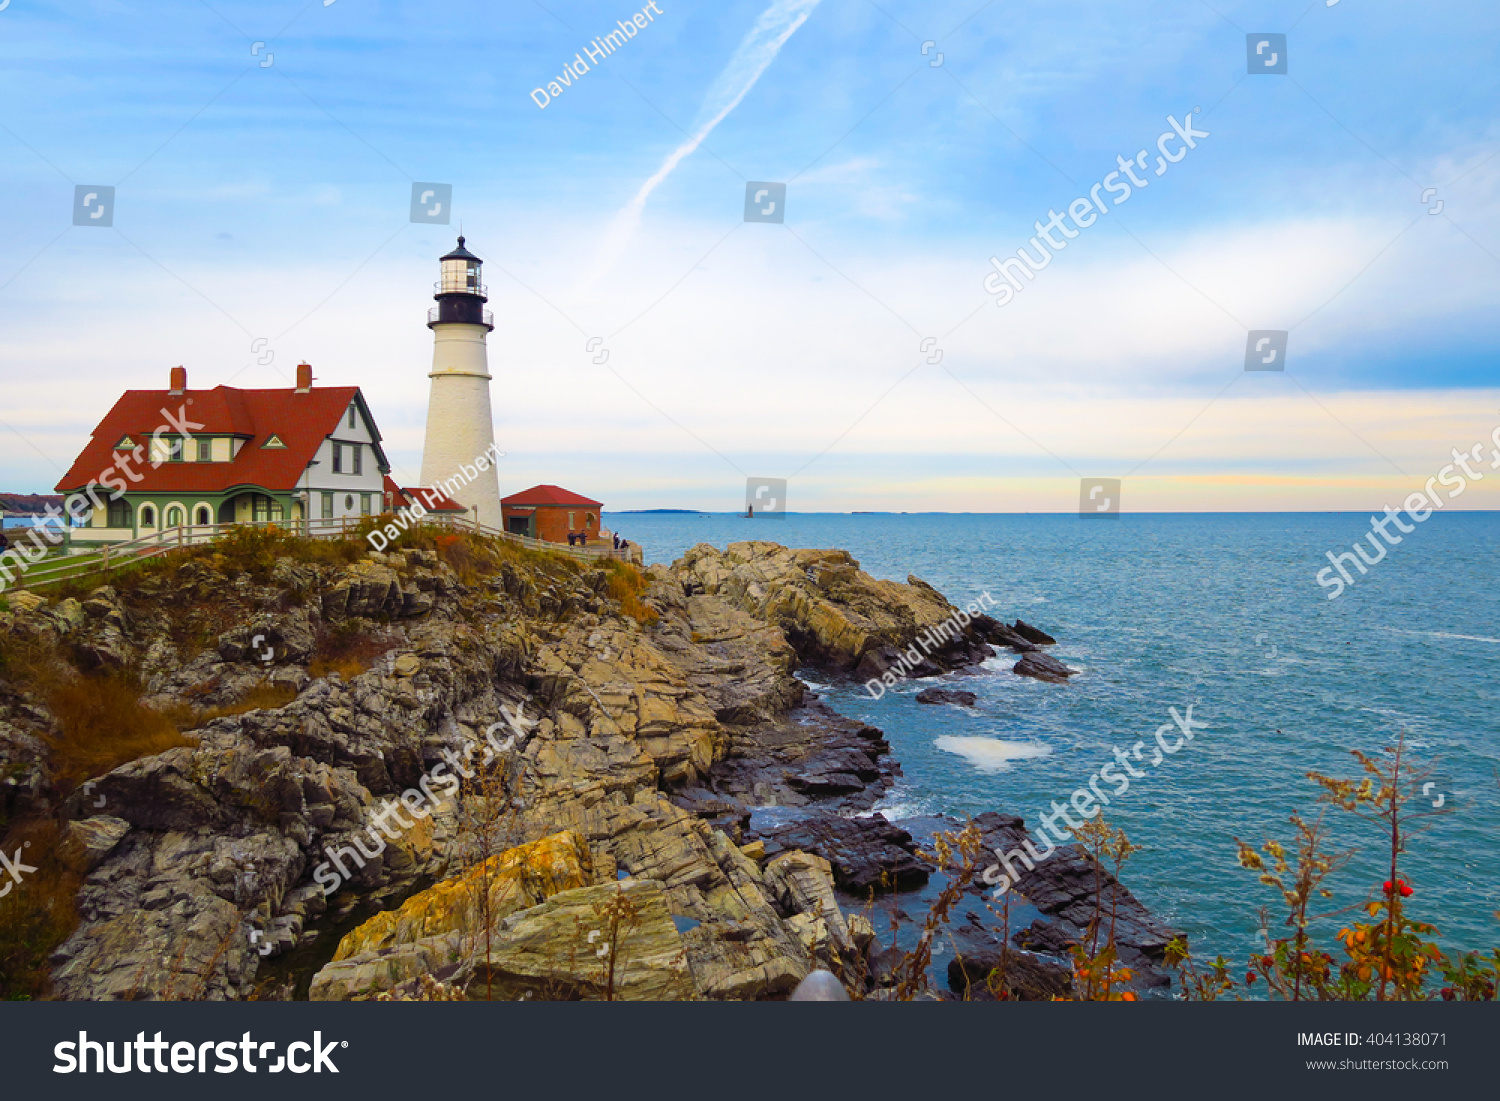 Lighthouse on the rocks, Portland, Maine #404138071